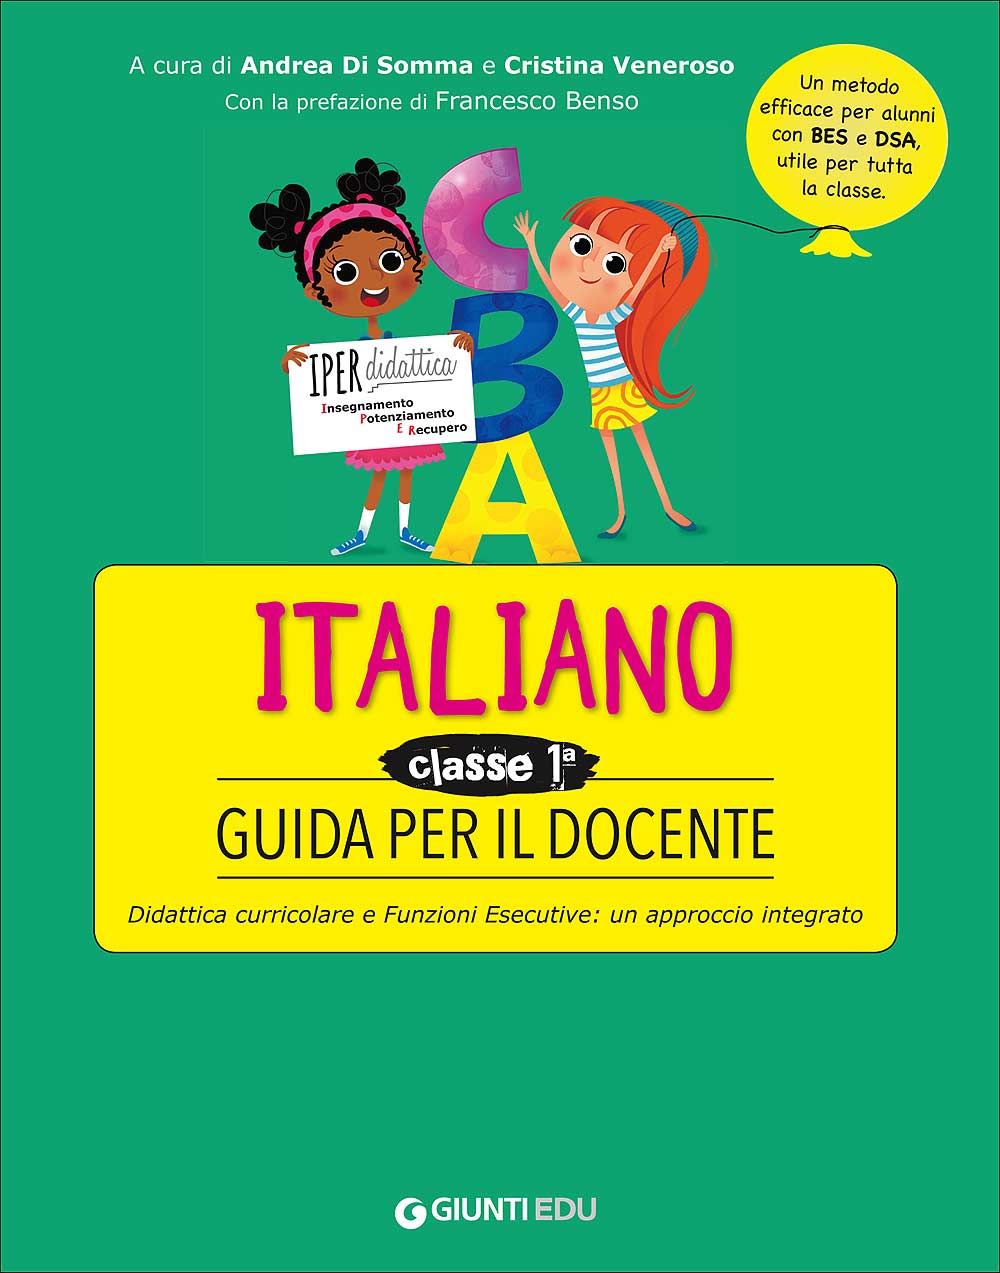 Guida per il docente - Italiano 1